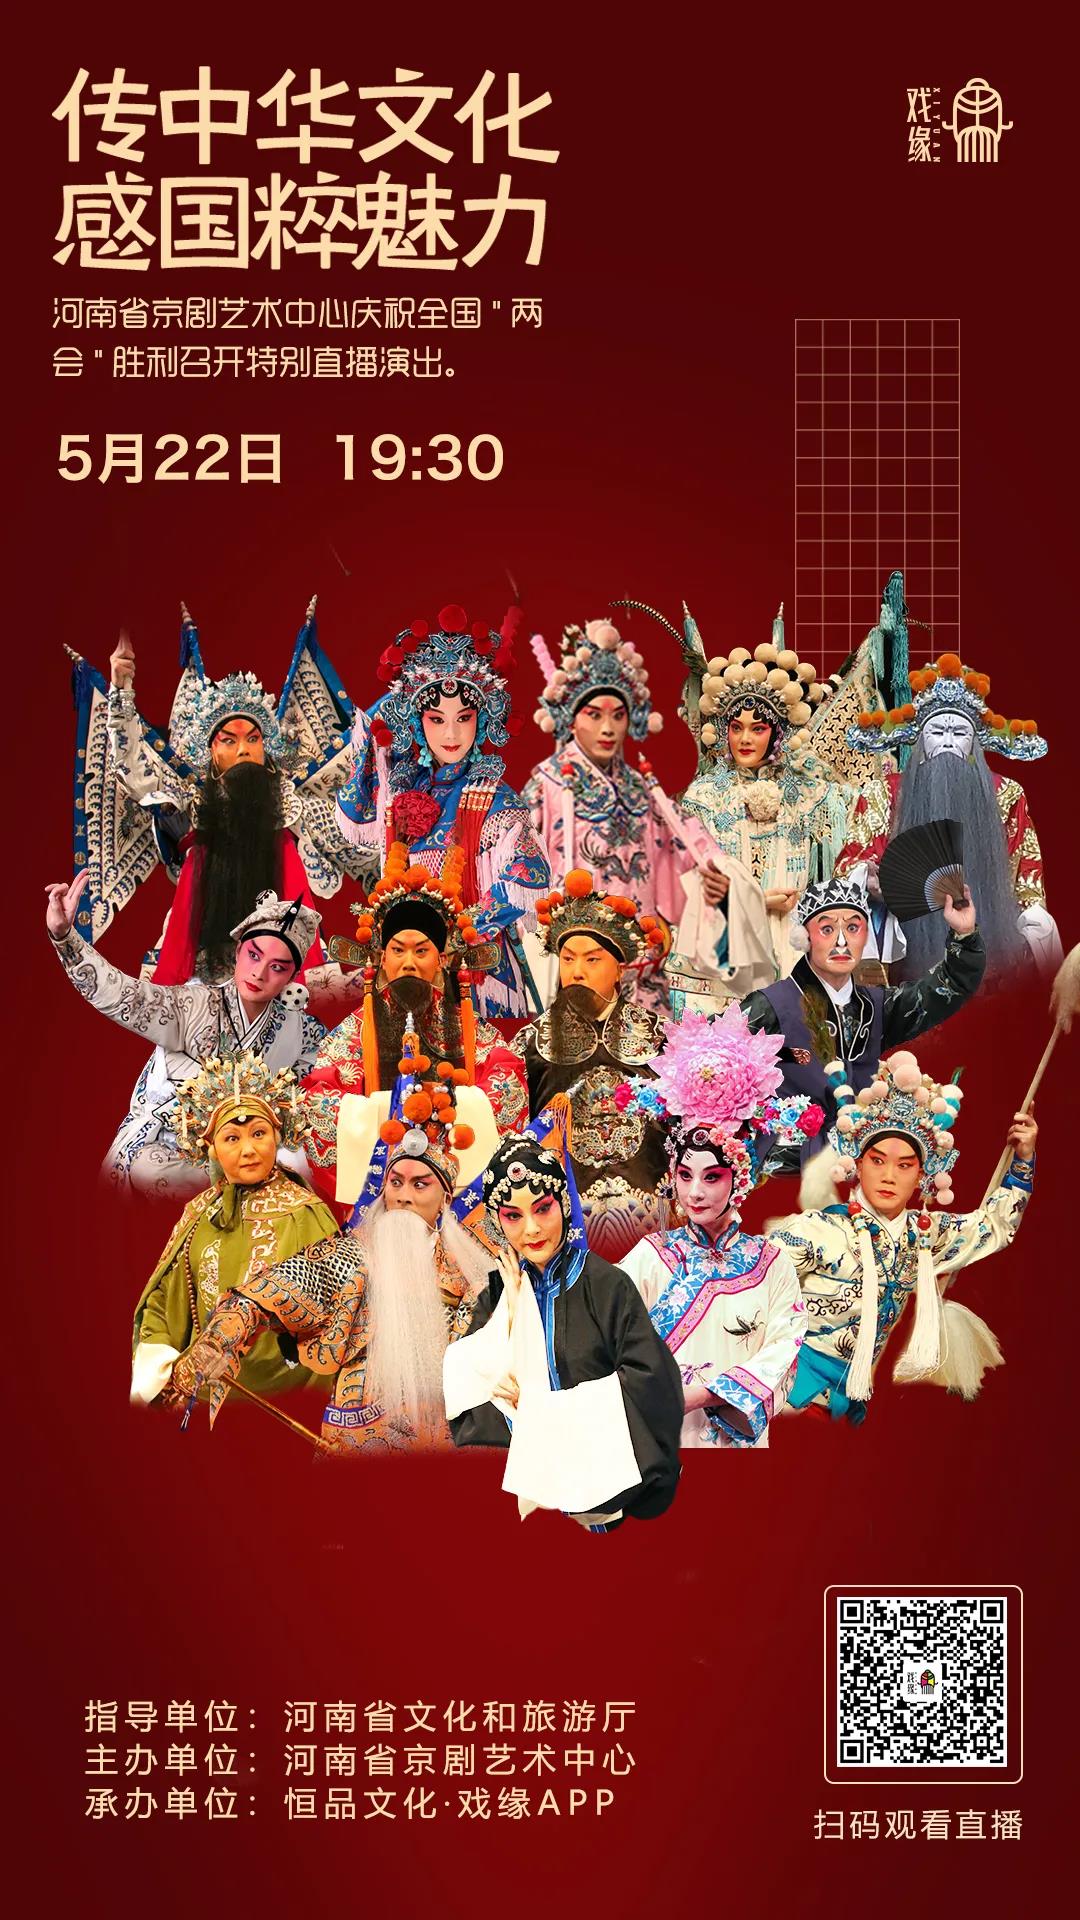 传中华文化 感国粹魅力——河南省京剧艺术中心庆祝全国